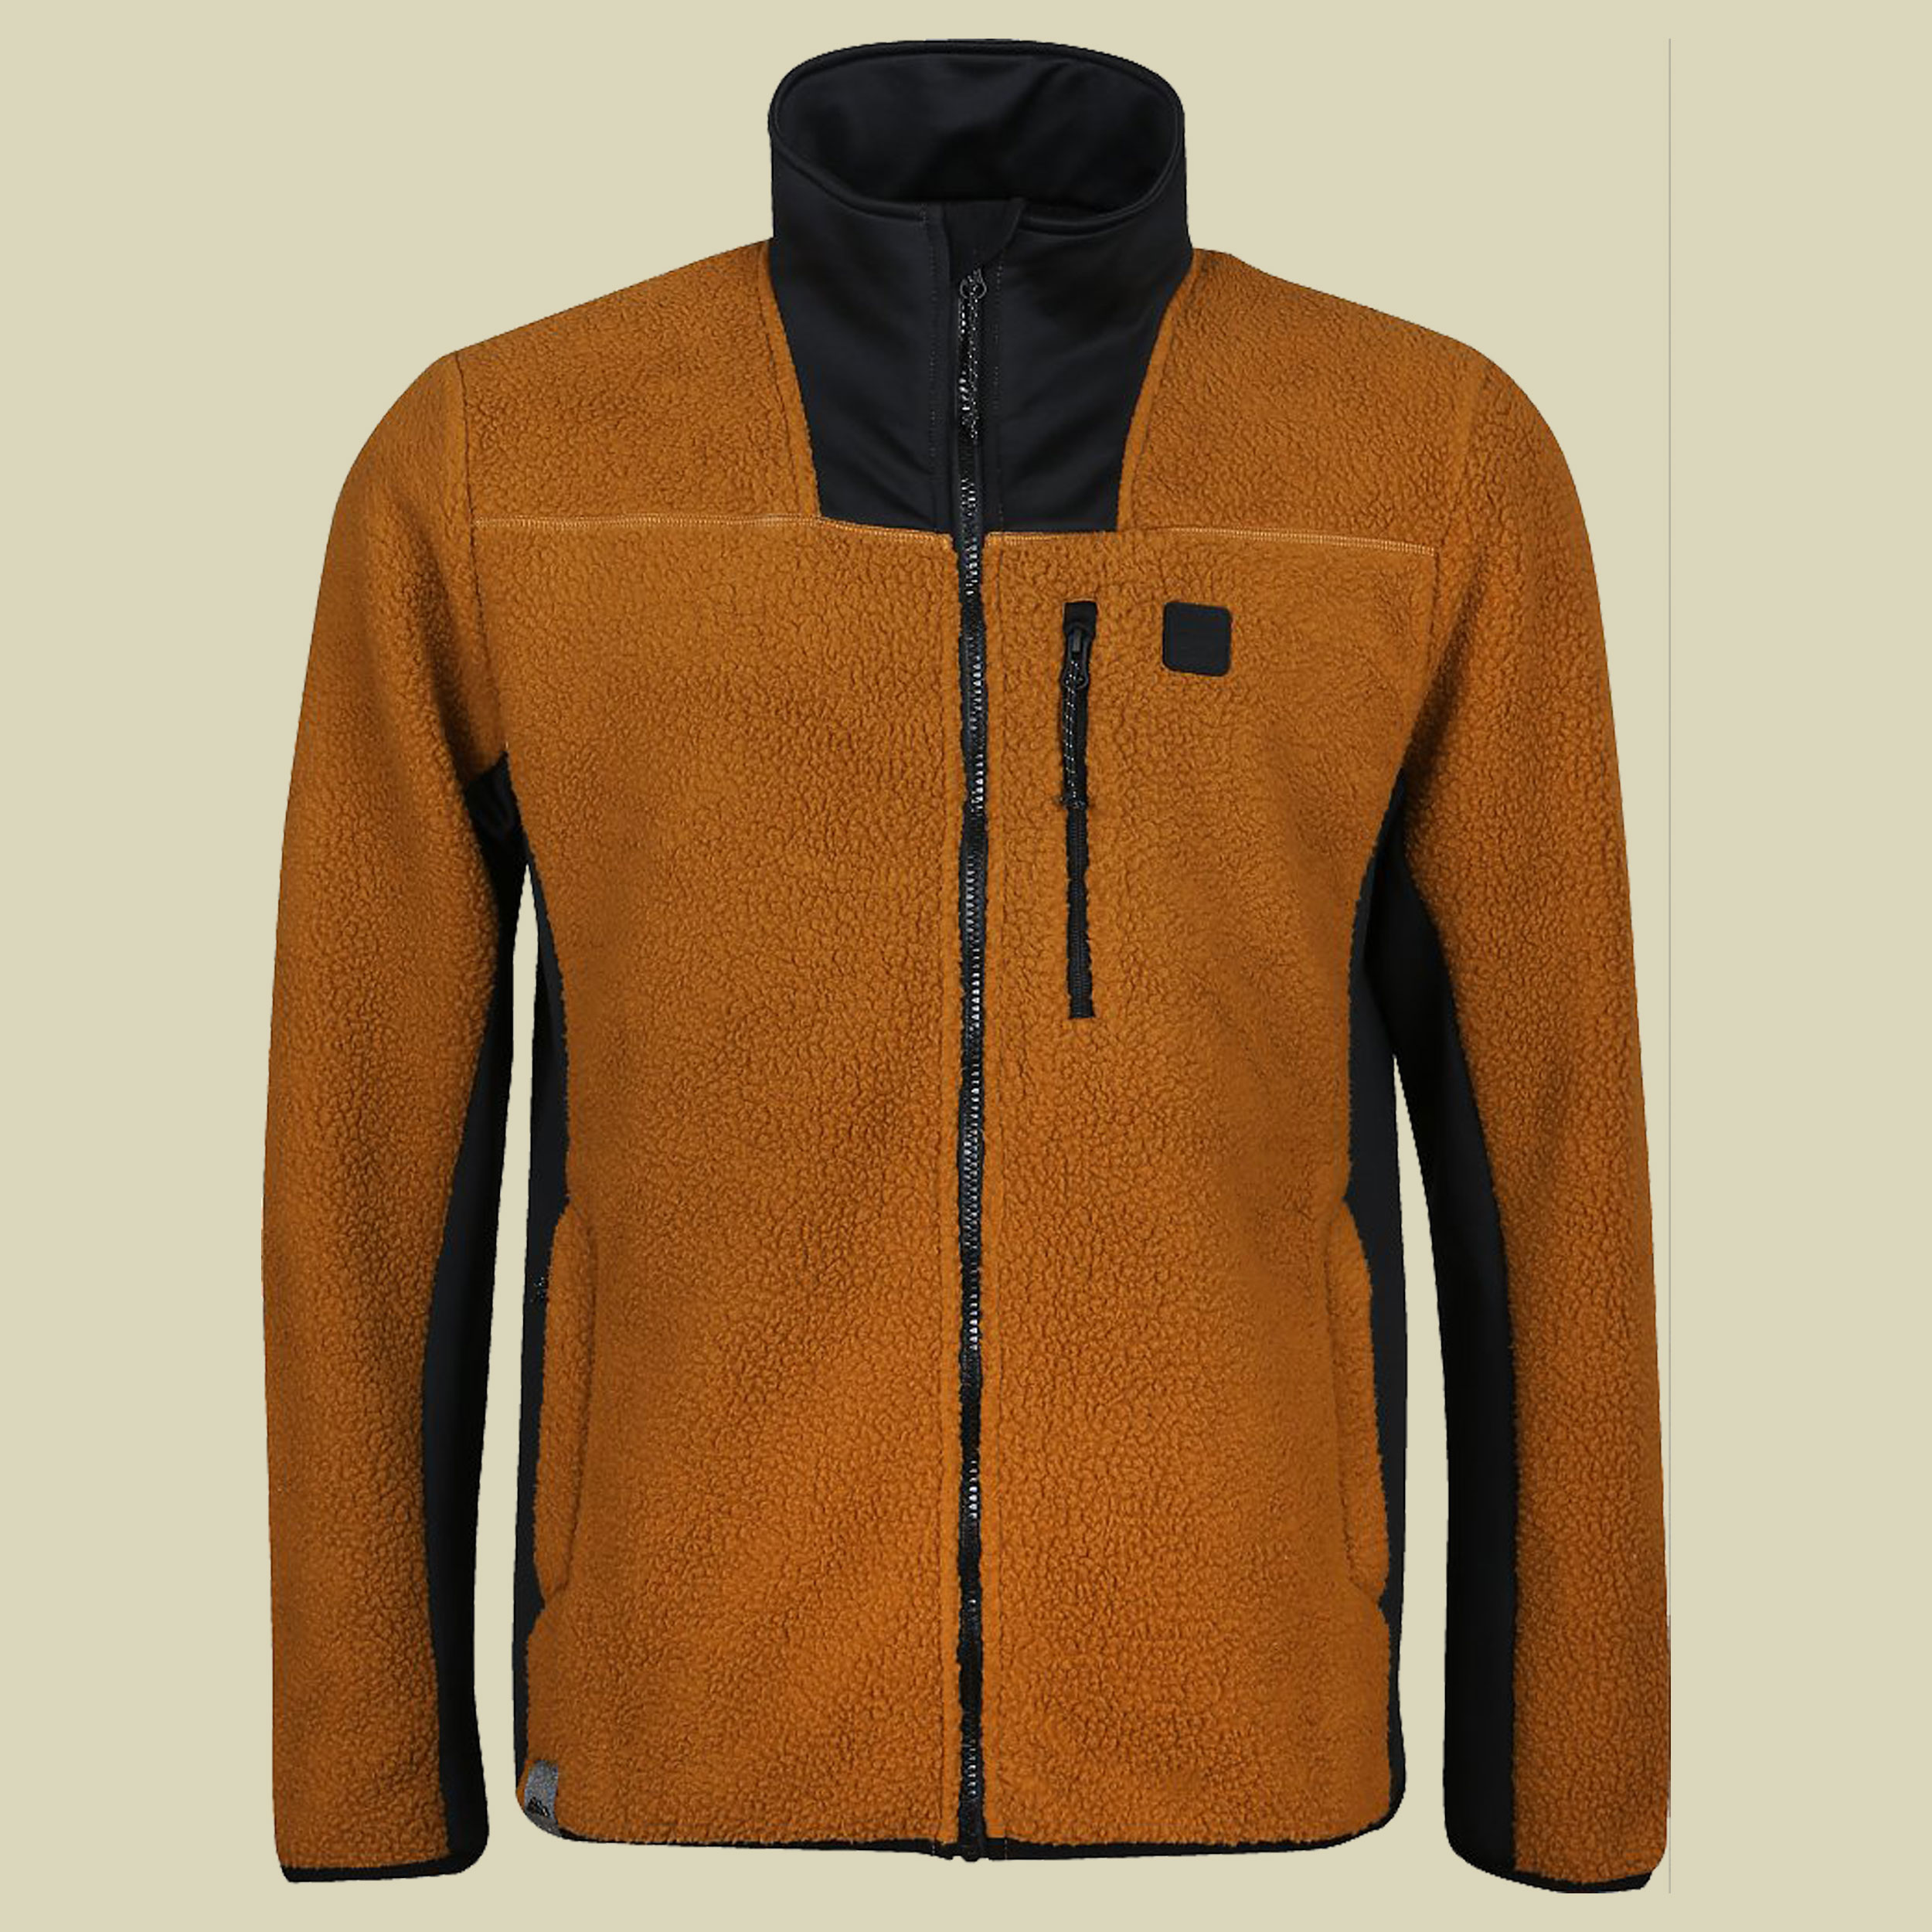 Verano-M Fleece Jacket Men Größe XL  Farbe sand